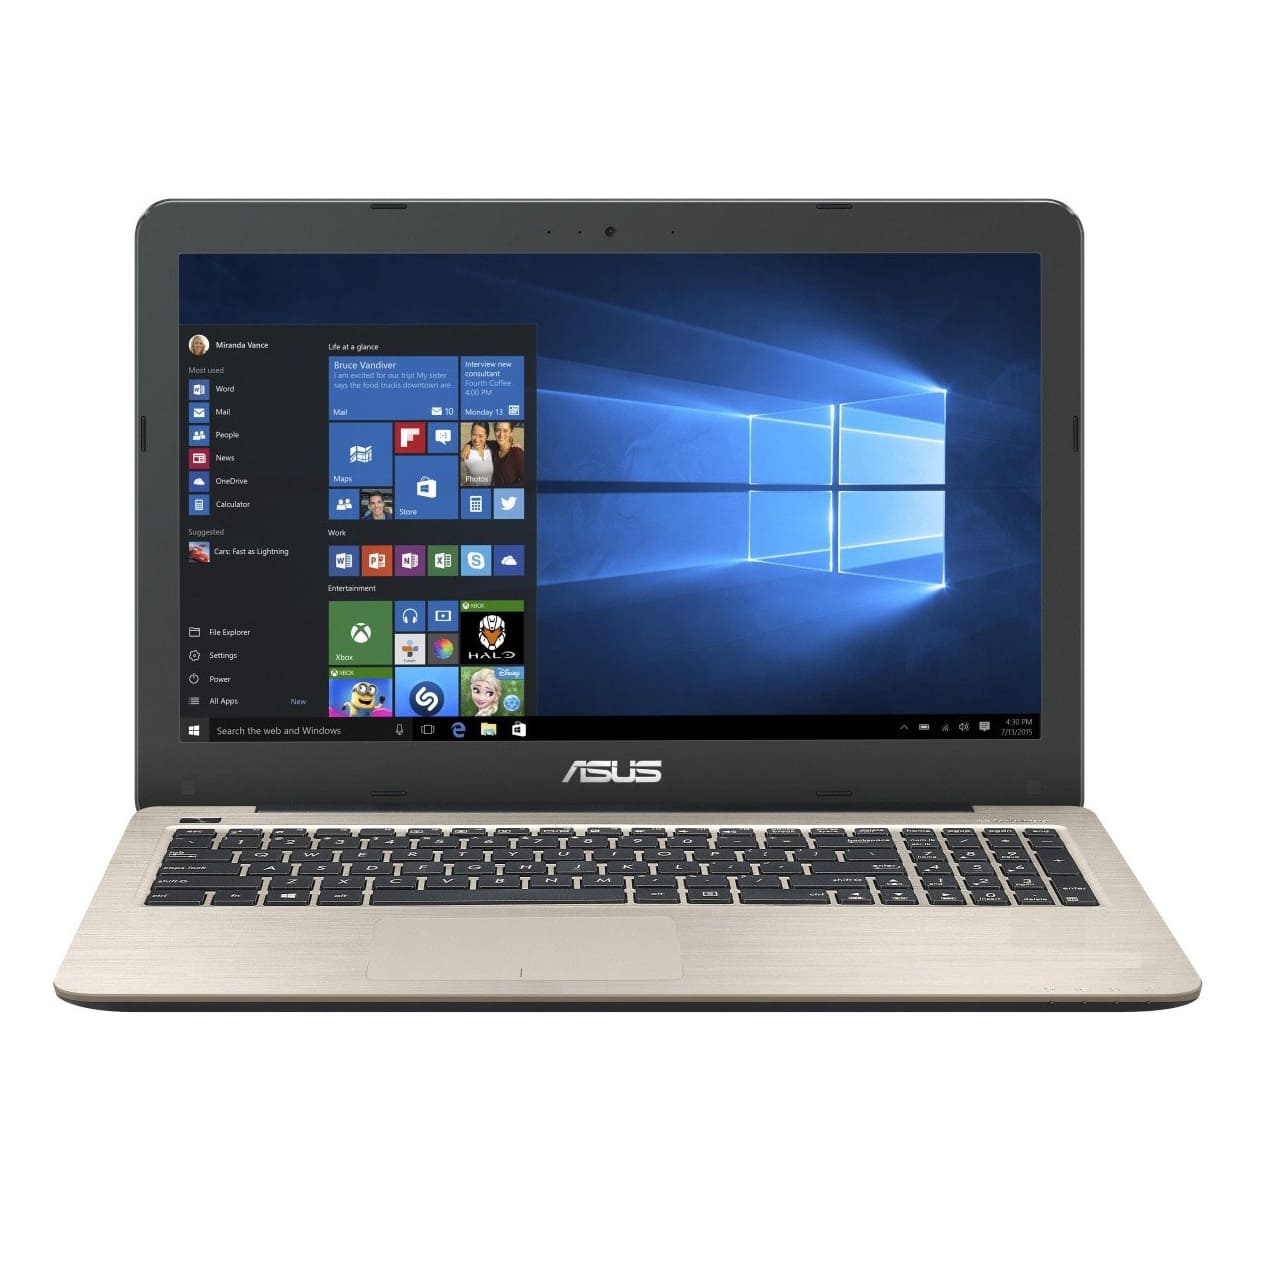 Đánh giá laptop Asus A556UR DM083D – Đẹp, sang trọng, cấu hình mạnh